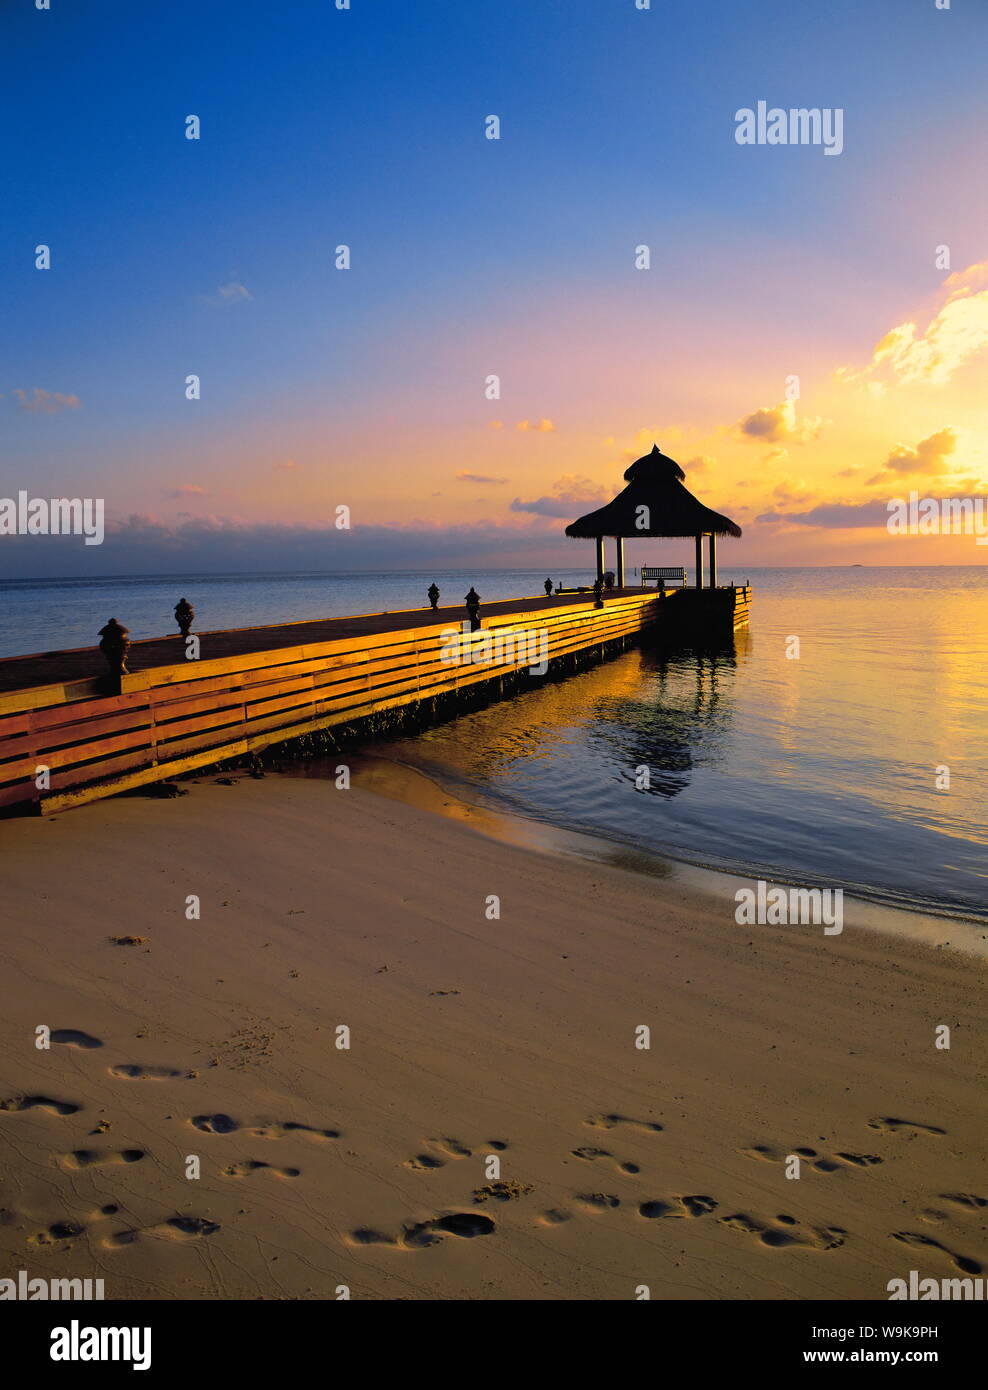 Pontile sulla spiaggia al tramonto, Maldive, Oceano Indiano, Asia Foto Stock